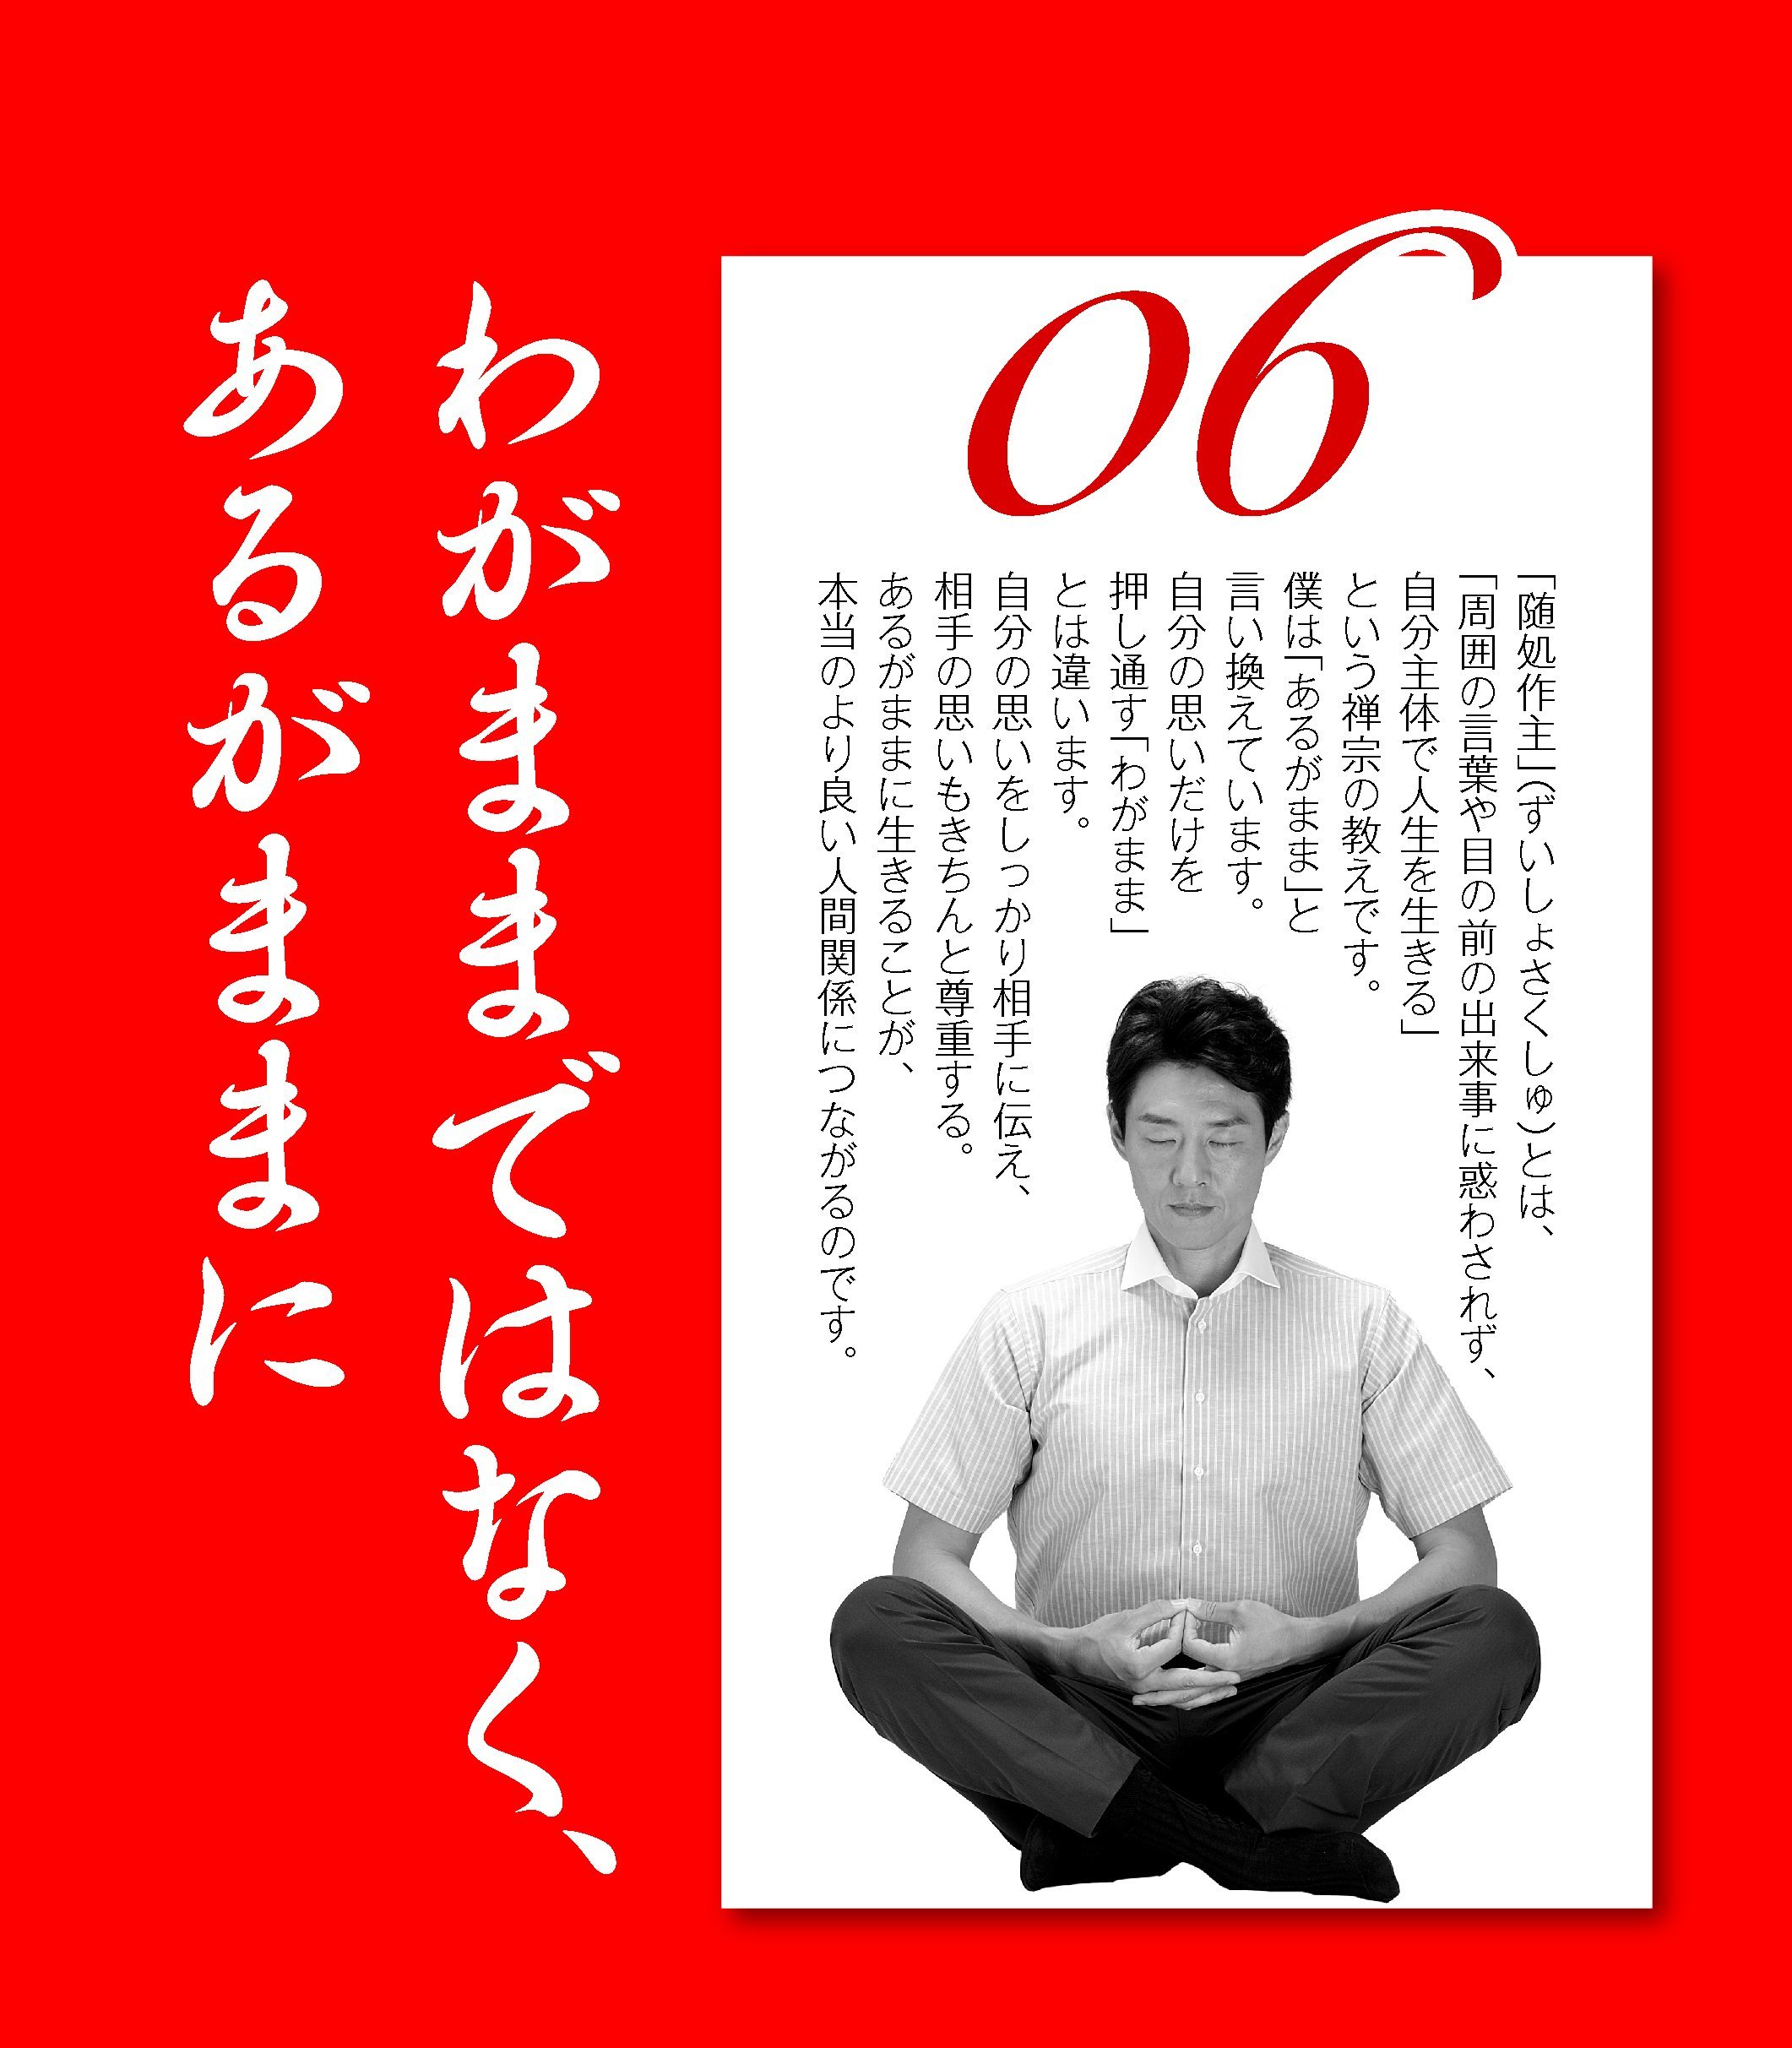 日本企業ブラックすぎワロタw1枚1440～1850円払ってこんなポスターを社内中に貼るらしい_b0163004_07035977.jpg